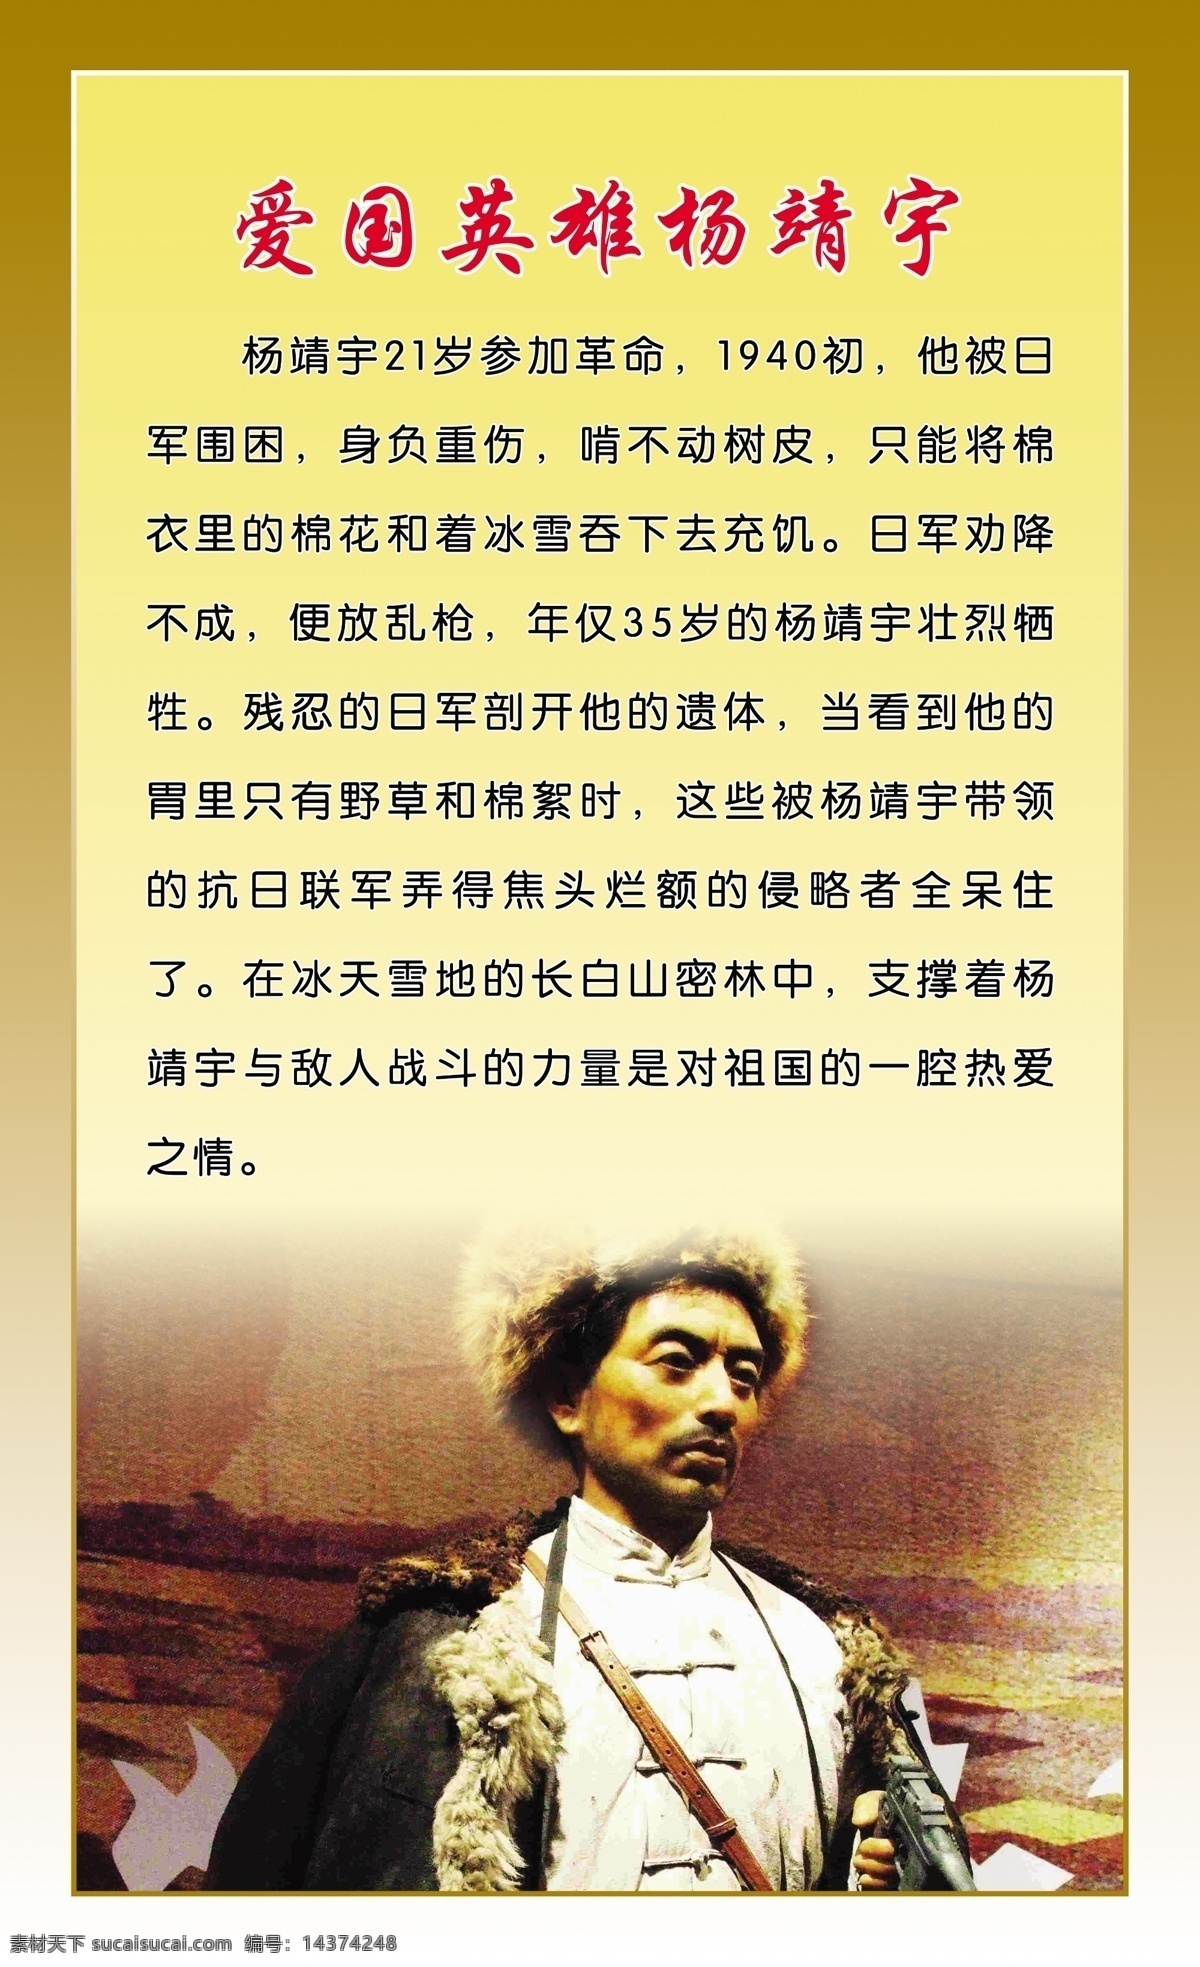 爱国 英雄 杨靖宇 回国 校园文化 名人故事 名人 展板模板 广告设计模板 源文件